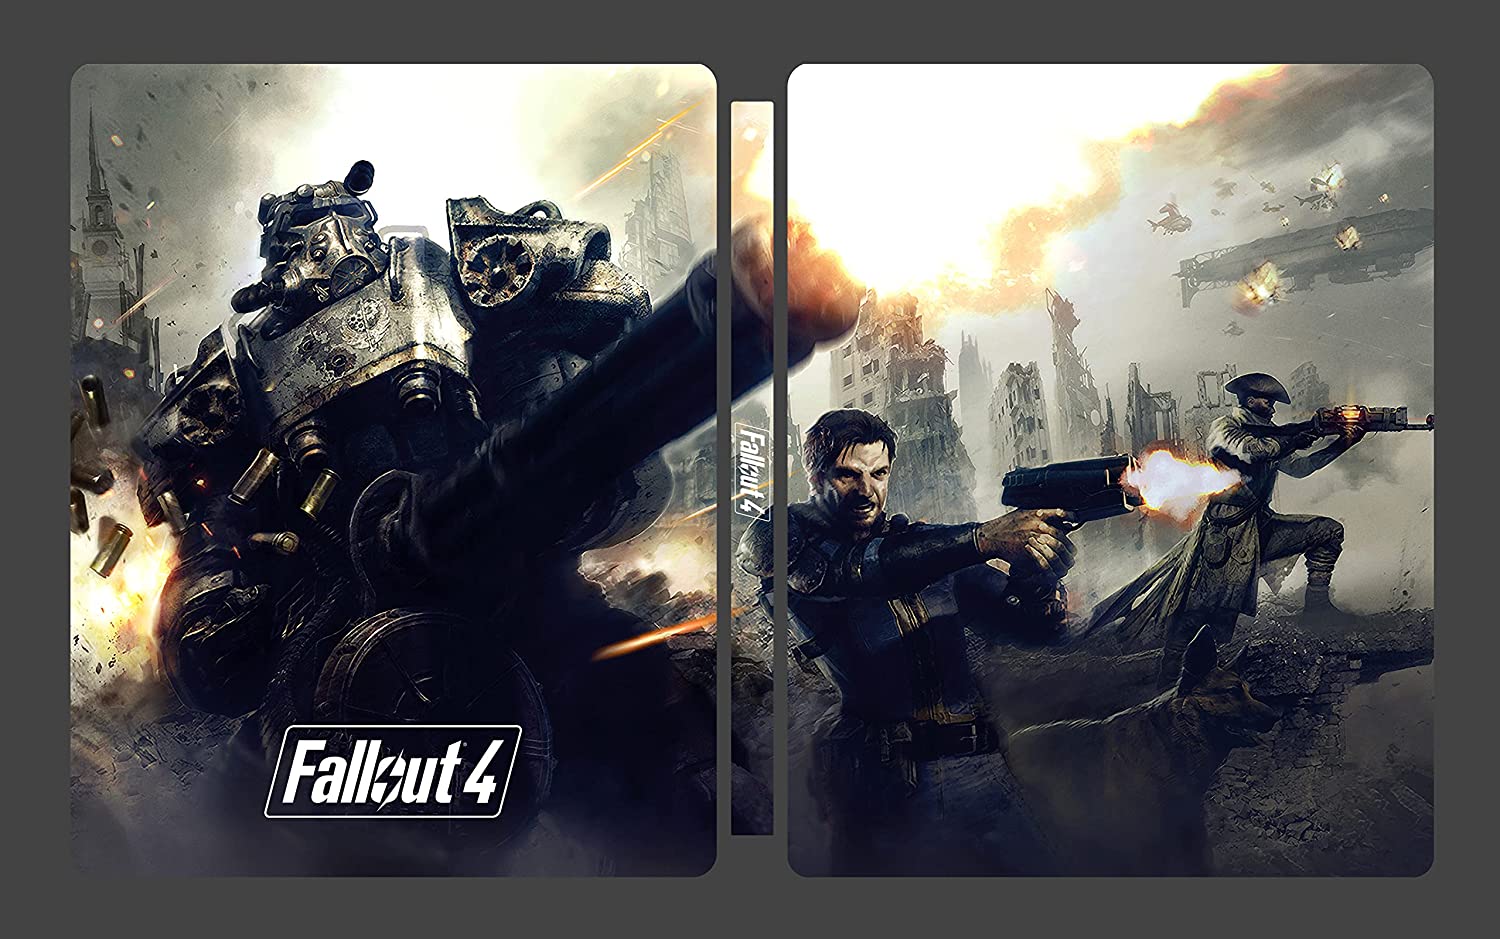 W październiku zadebiutuje specjalne wydanie - 4 Steelbook Fallout Kolekcjonerki GOTY Edition